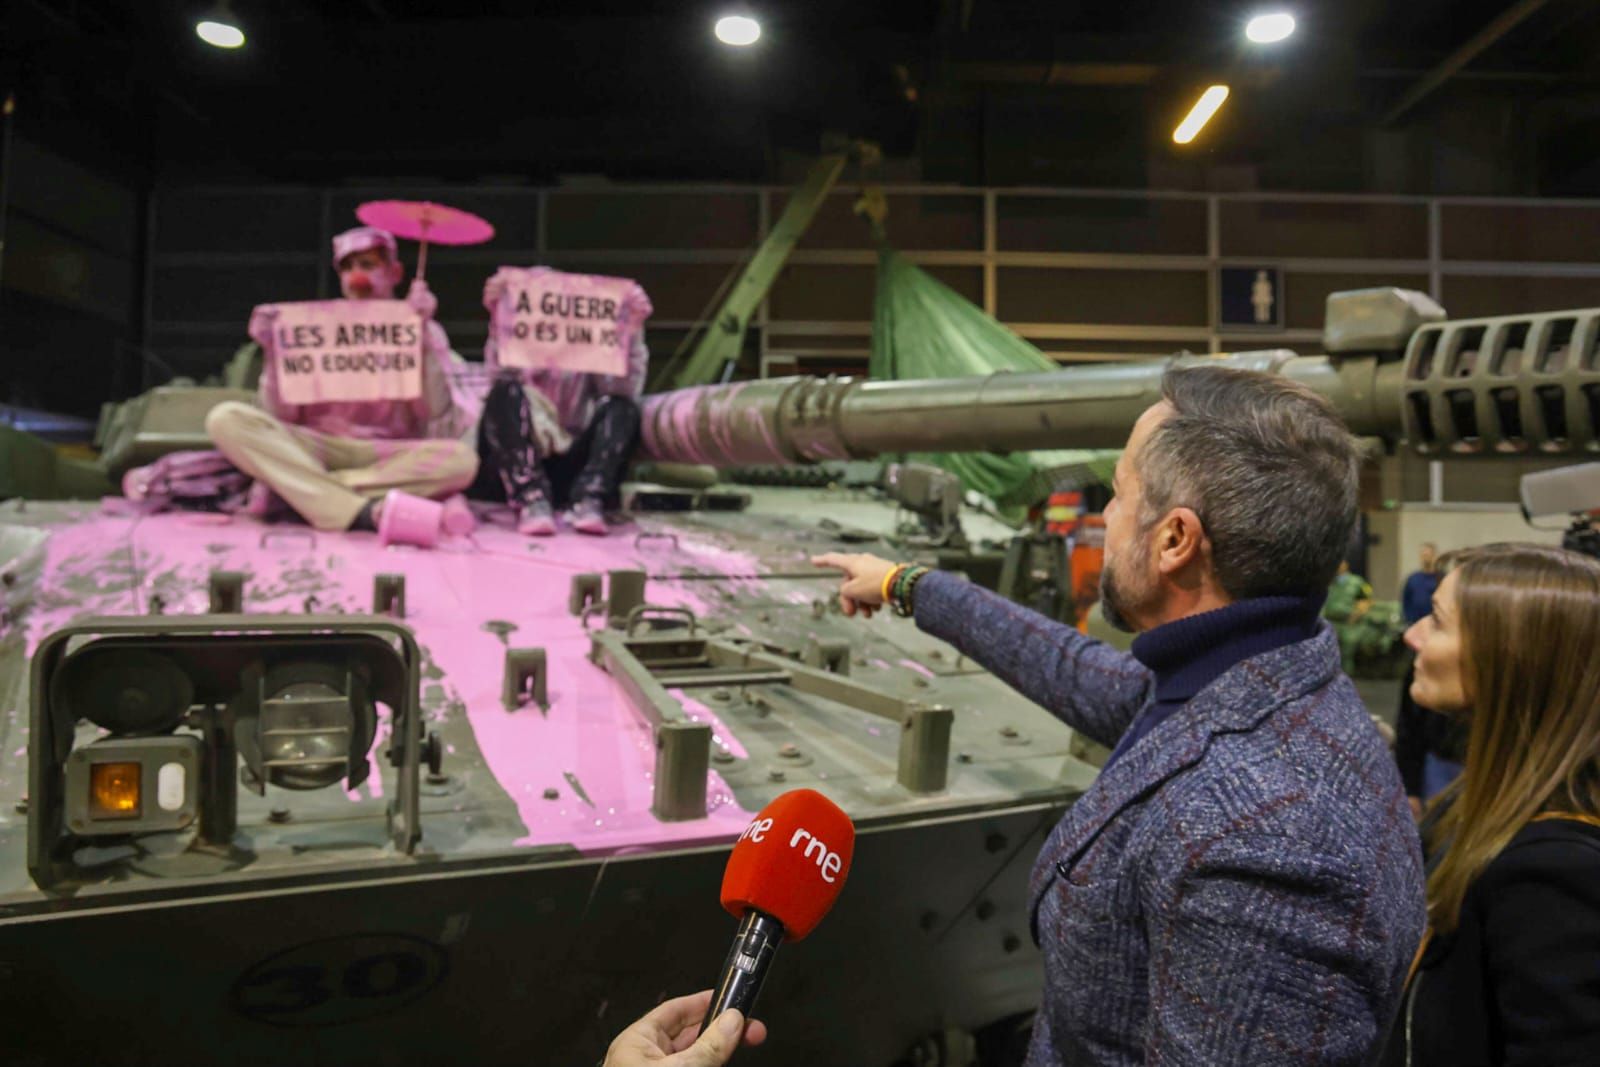 Unos pacifistas rocían pintura rosa sobre una tanqueta en Expojove: "Las armas no educan"